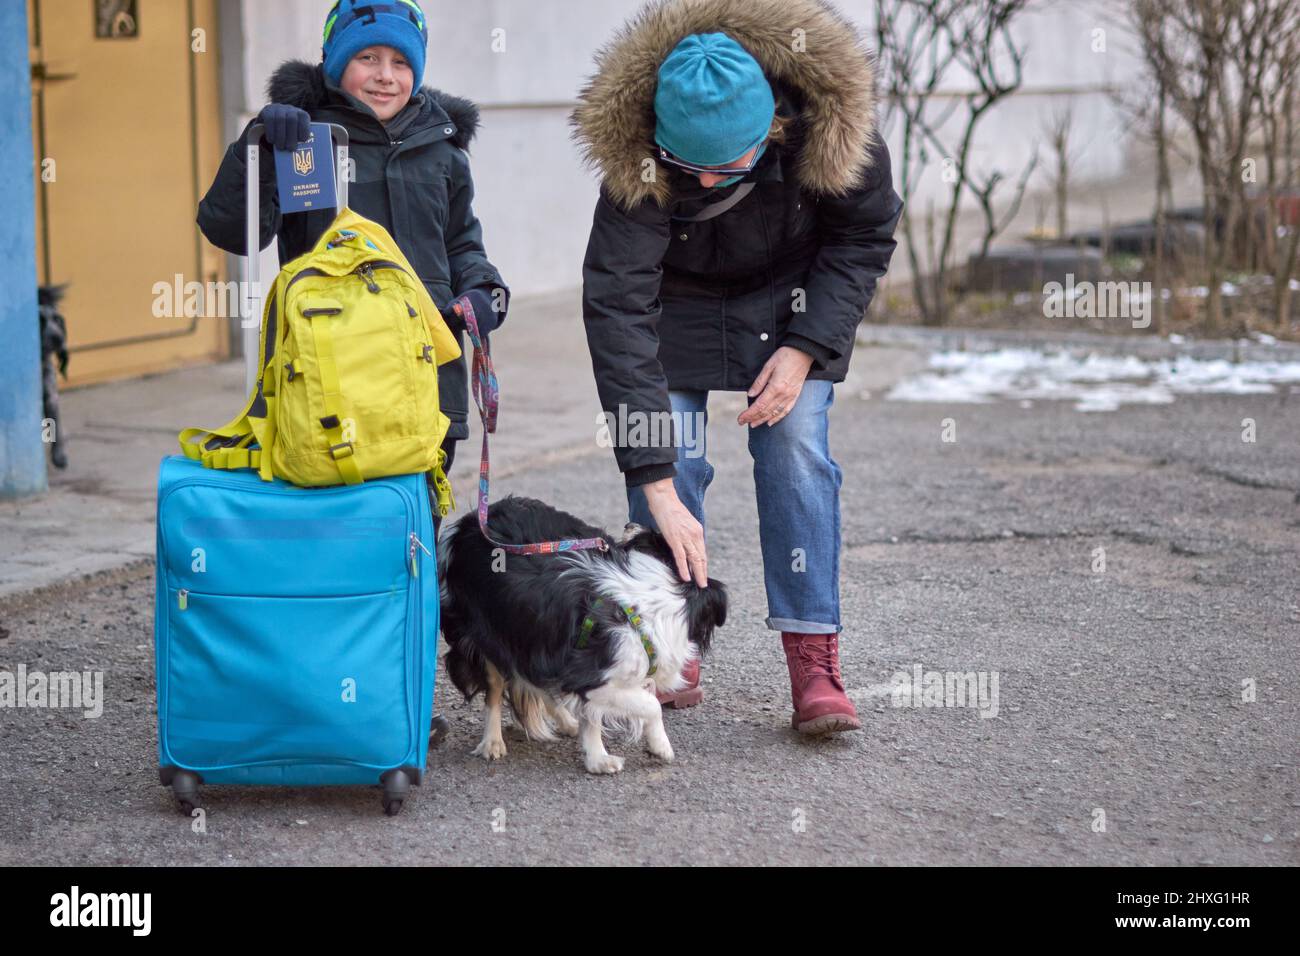 Évacuation des civils, triste enfant avec le drapeau de l'Ukraine. Famille de réfugiés d'Ukraine traversant la frontière. Main tenant un passeport au-dessus des bagages avec drapeau jaune-bleu. Cessez la guerre, soutenez l'Ukraine Banque D'Images